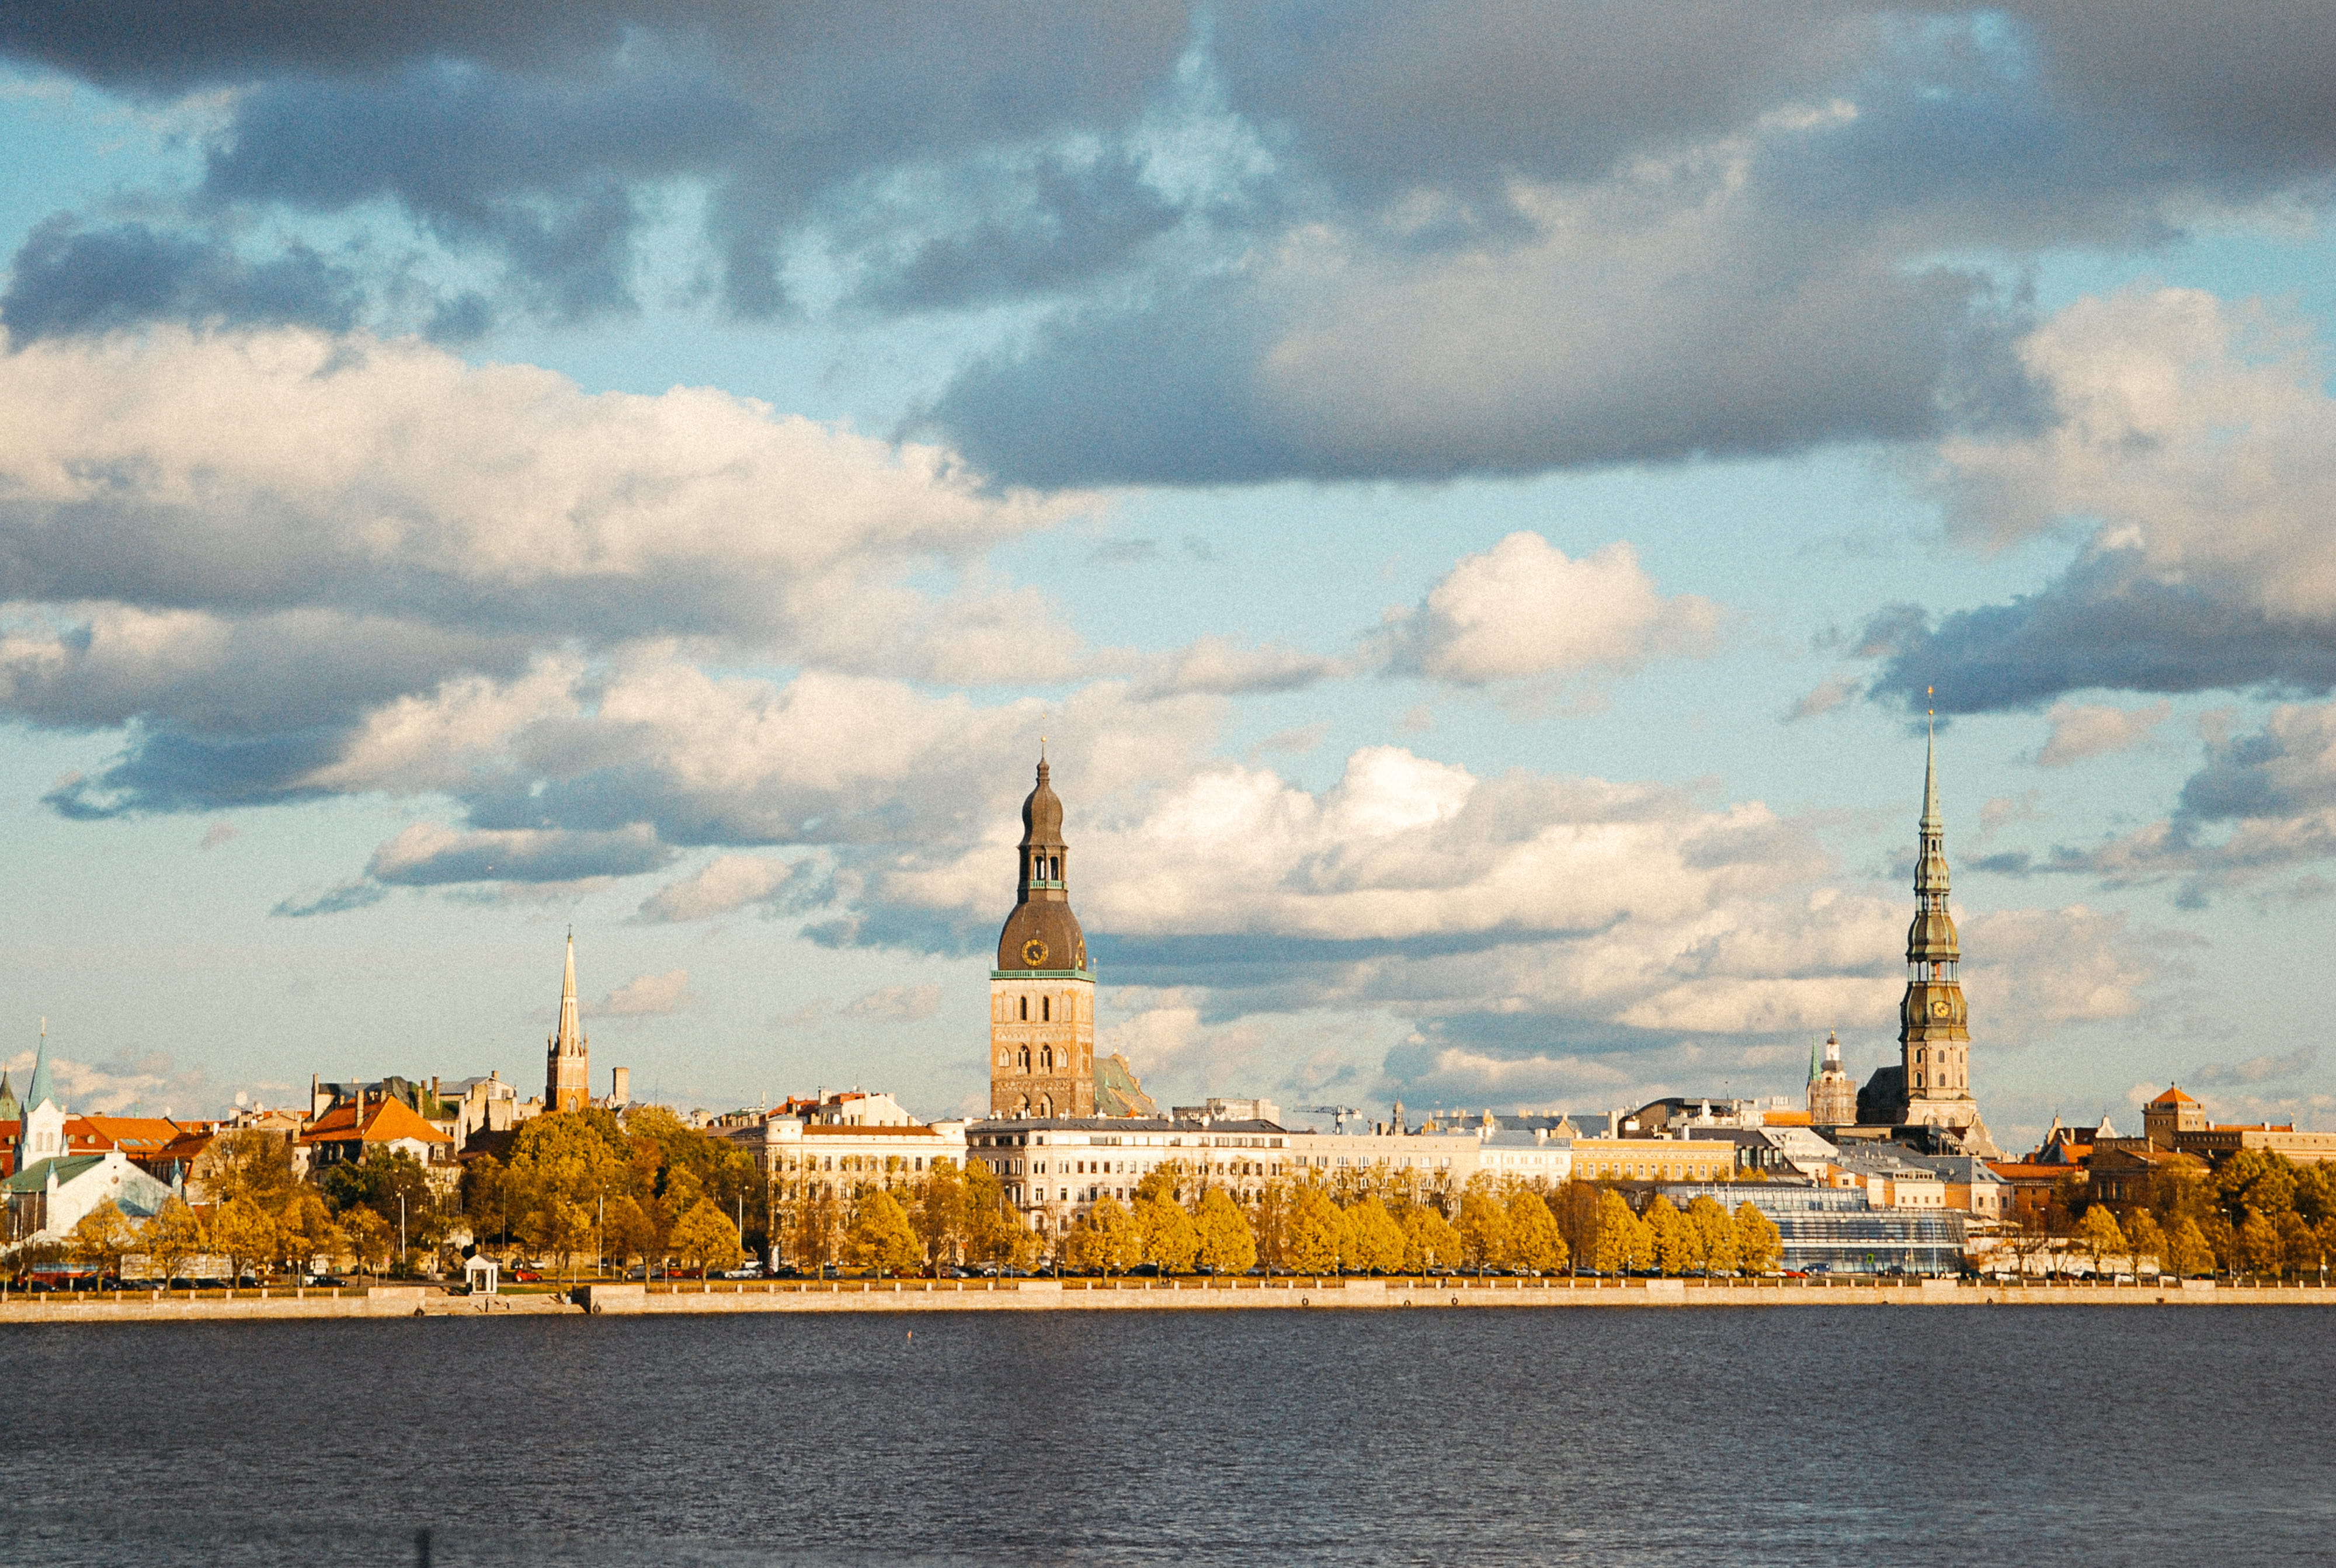 Riga Cityscape, architecture and Cityscape, famous Place, river